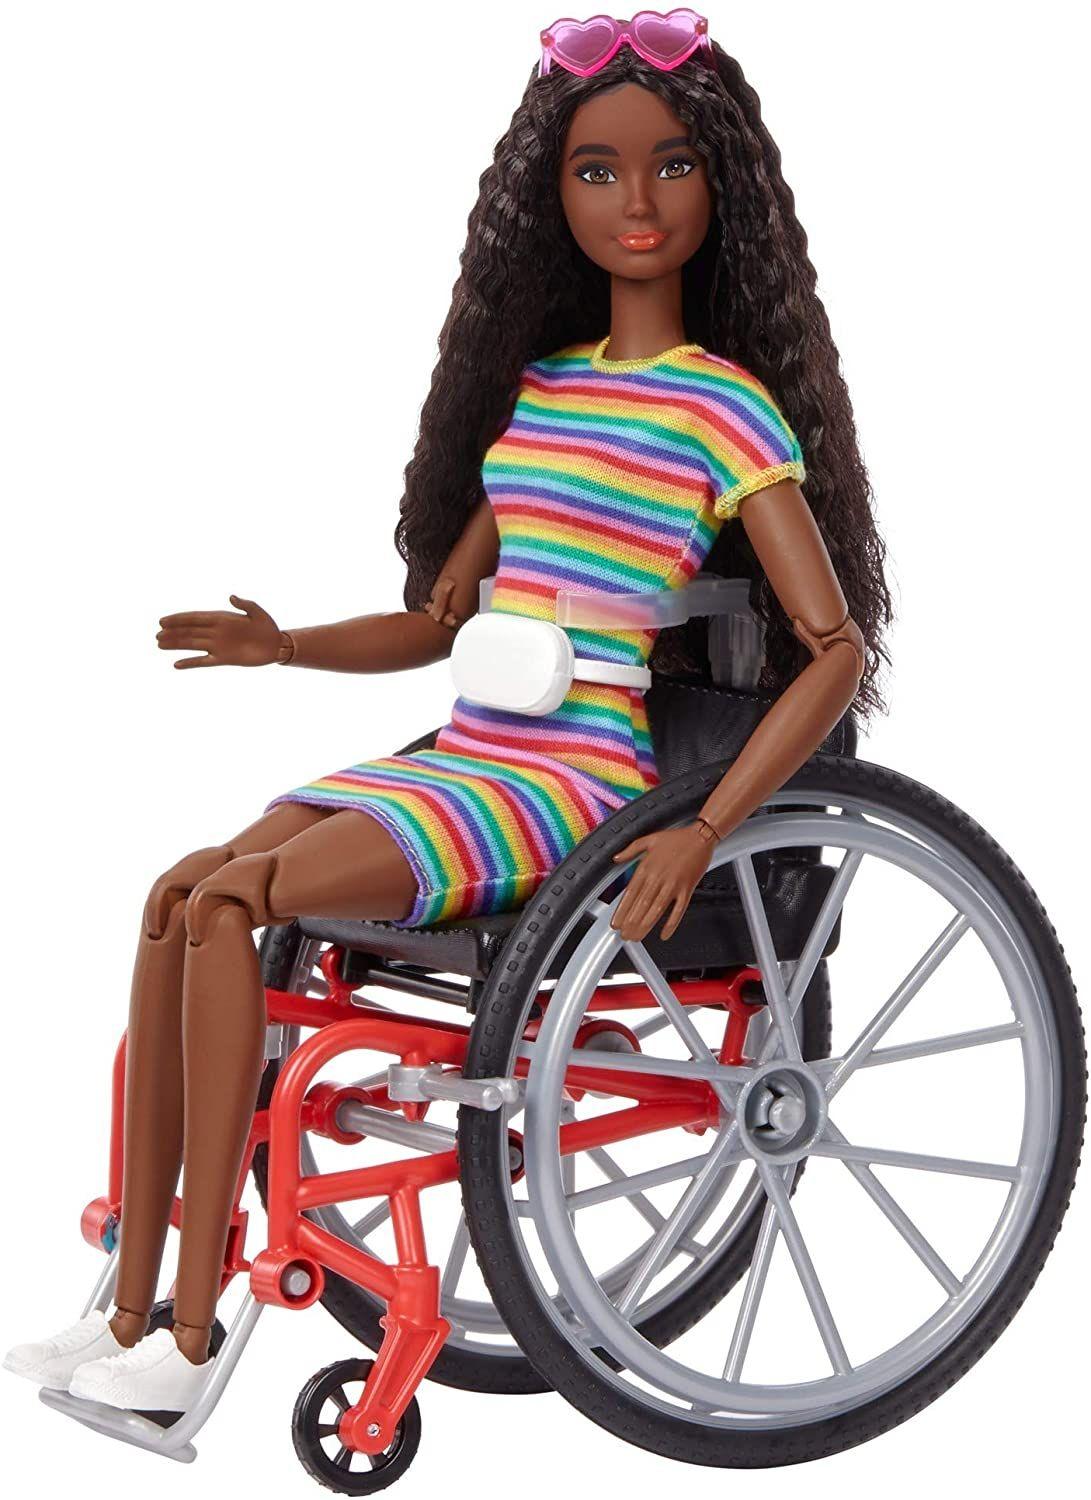 Barbie Poupée Dreamtopia Licorne avec Cheveux Arc-en-Ciel et Access